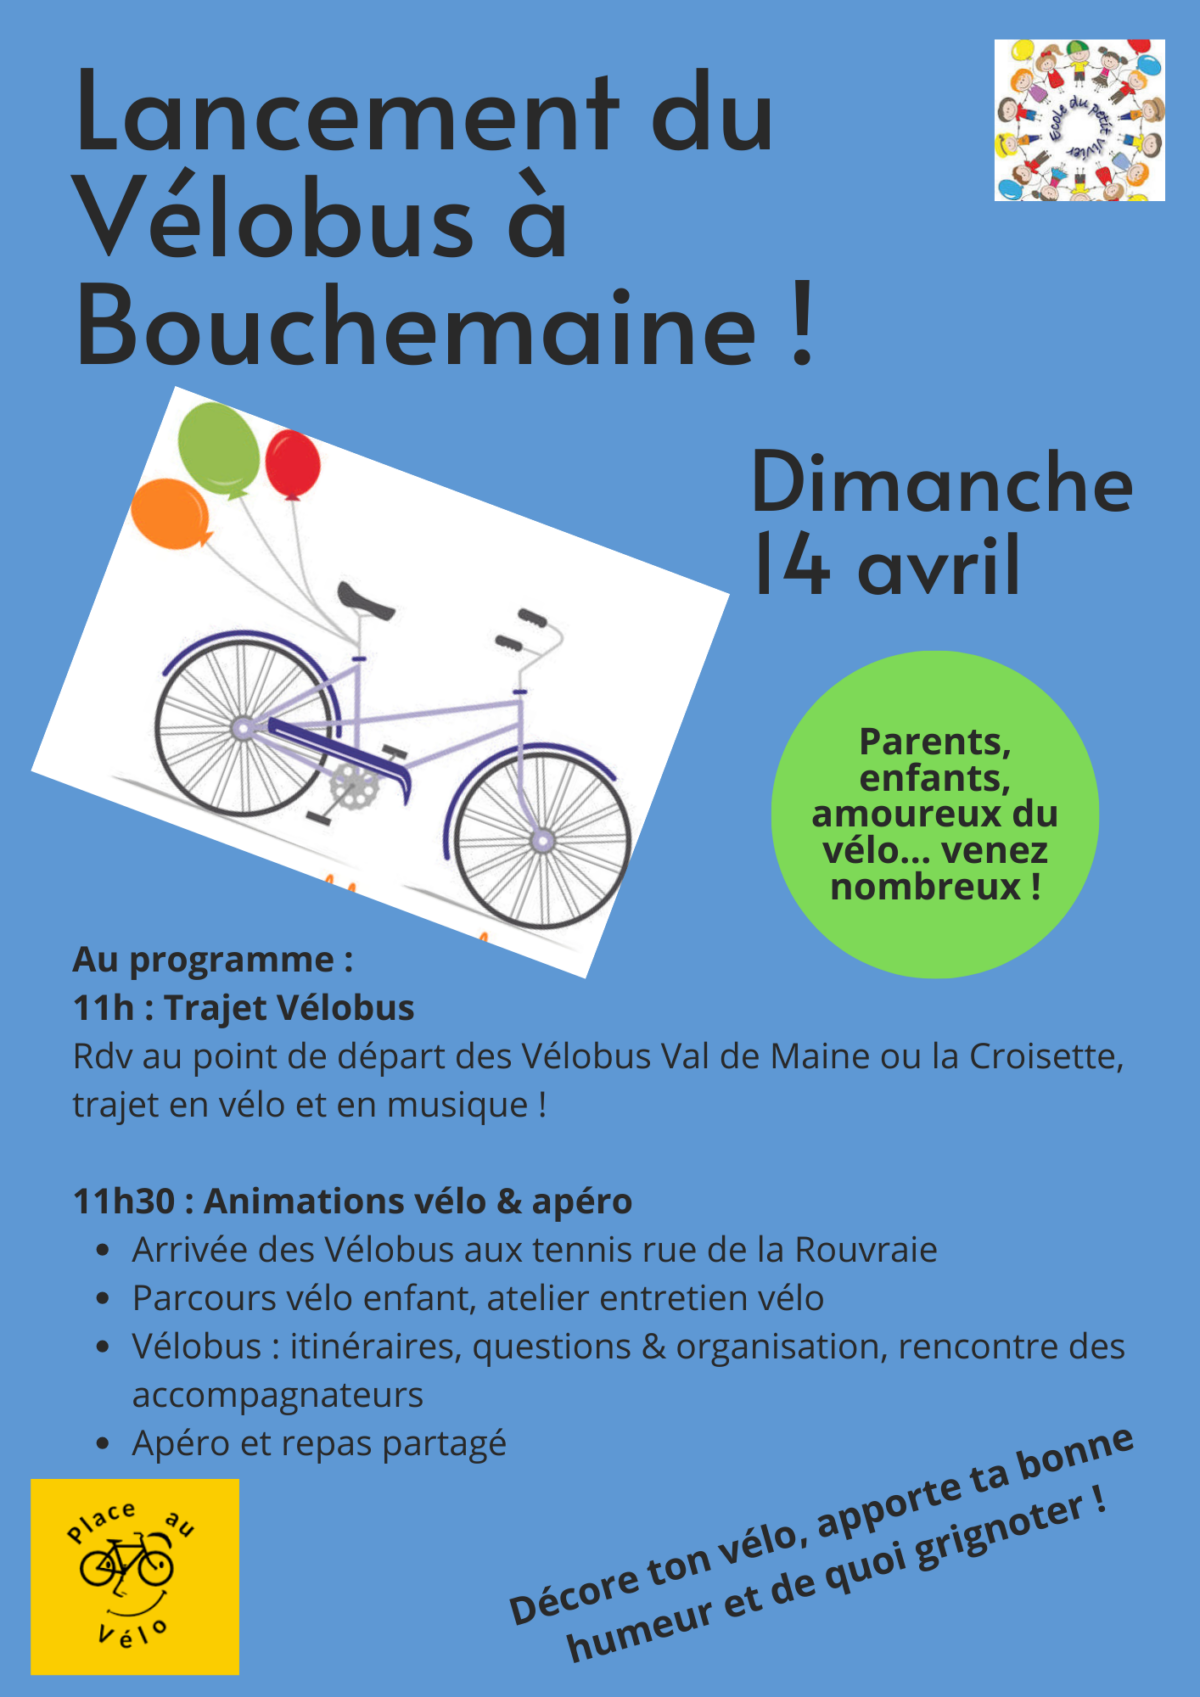 Lancement du Vélobus à Bouchemaine